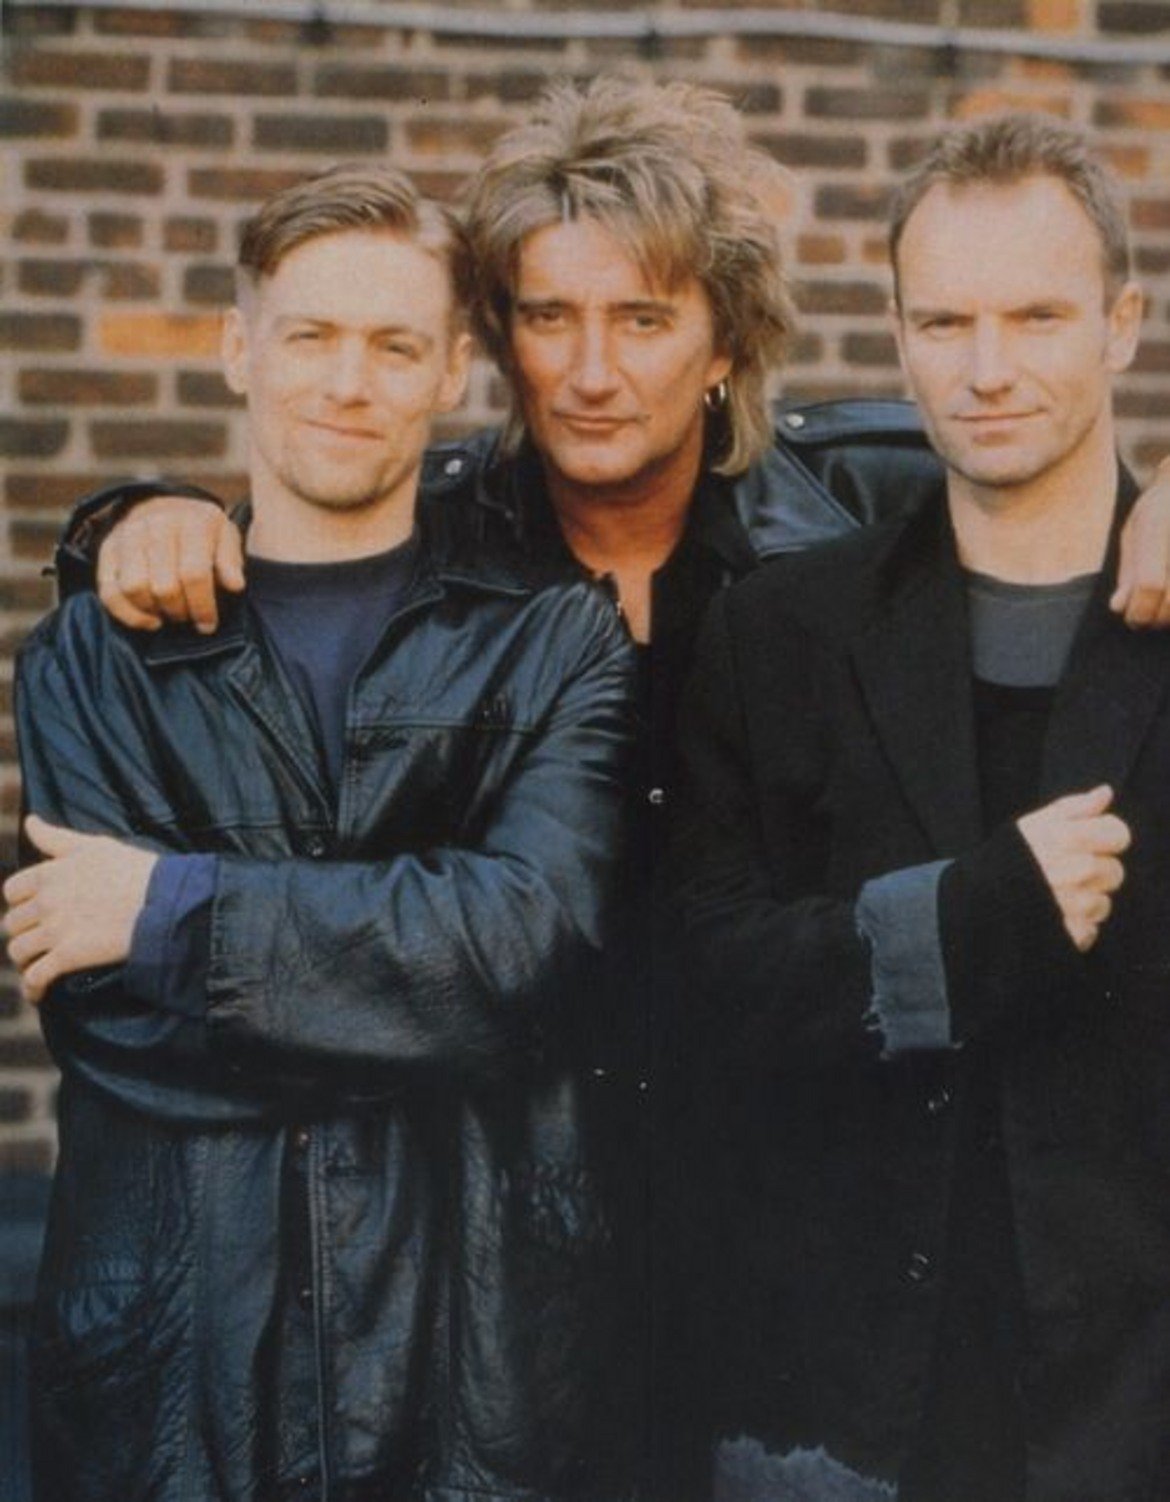 Bryan Adams, Rod Stewart, Sting - All For Love ("Тримата мускетари")
Три от най-емблематичните мъжки гласове на поп-рок музиката кръстосват шпаги, за да произведат един сладникав рок хит за доблестта, смелостта и всичко, което човек си струва да направи в името на любовта.